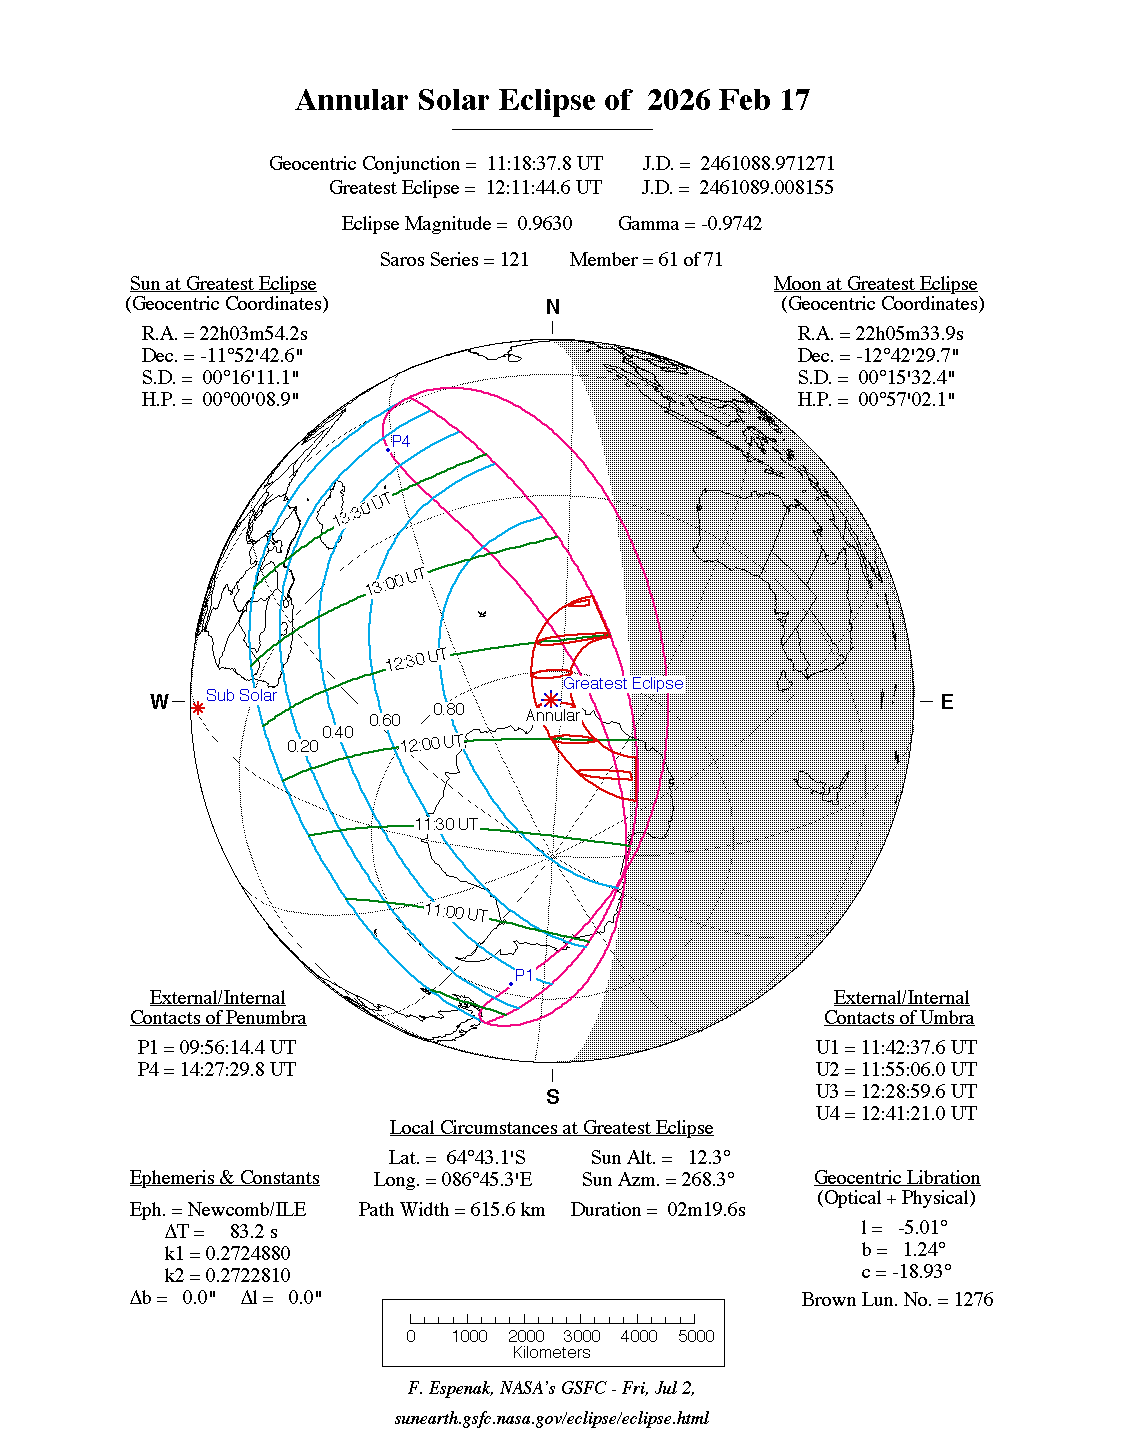 Verlauf der Ringförmigen Sonnenfinsternis am 17.02.2026